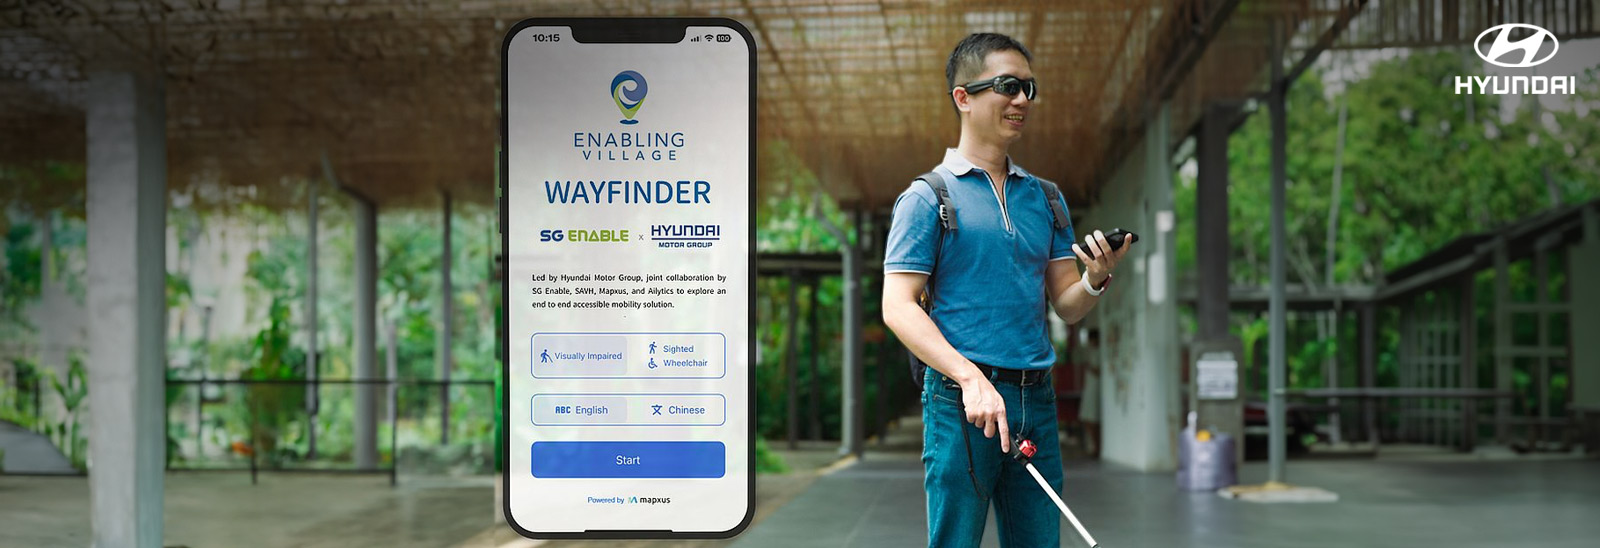 Personas con discapacidad visual utilizando aplicación Wayfinder